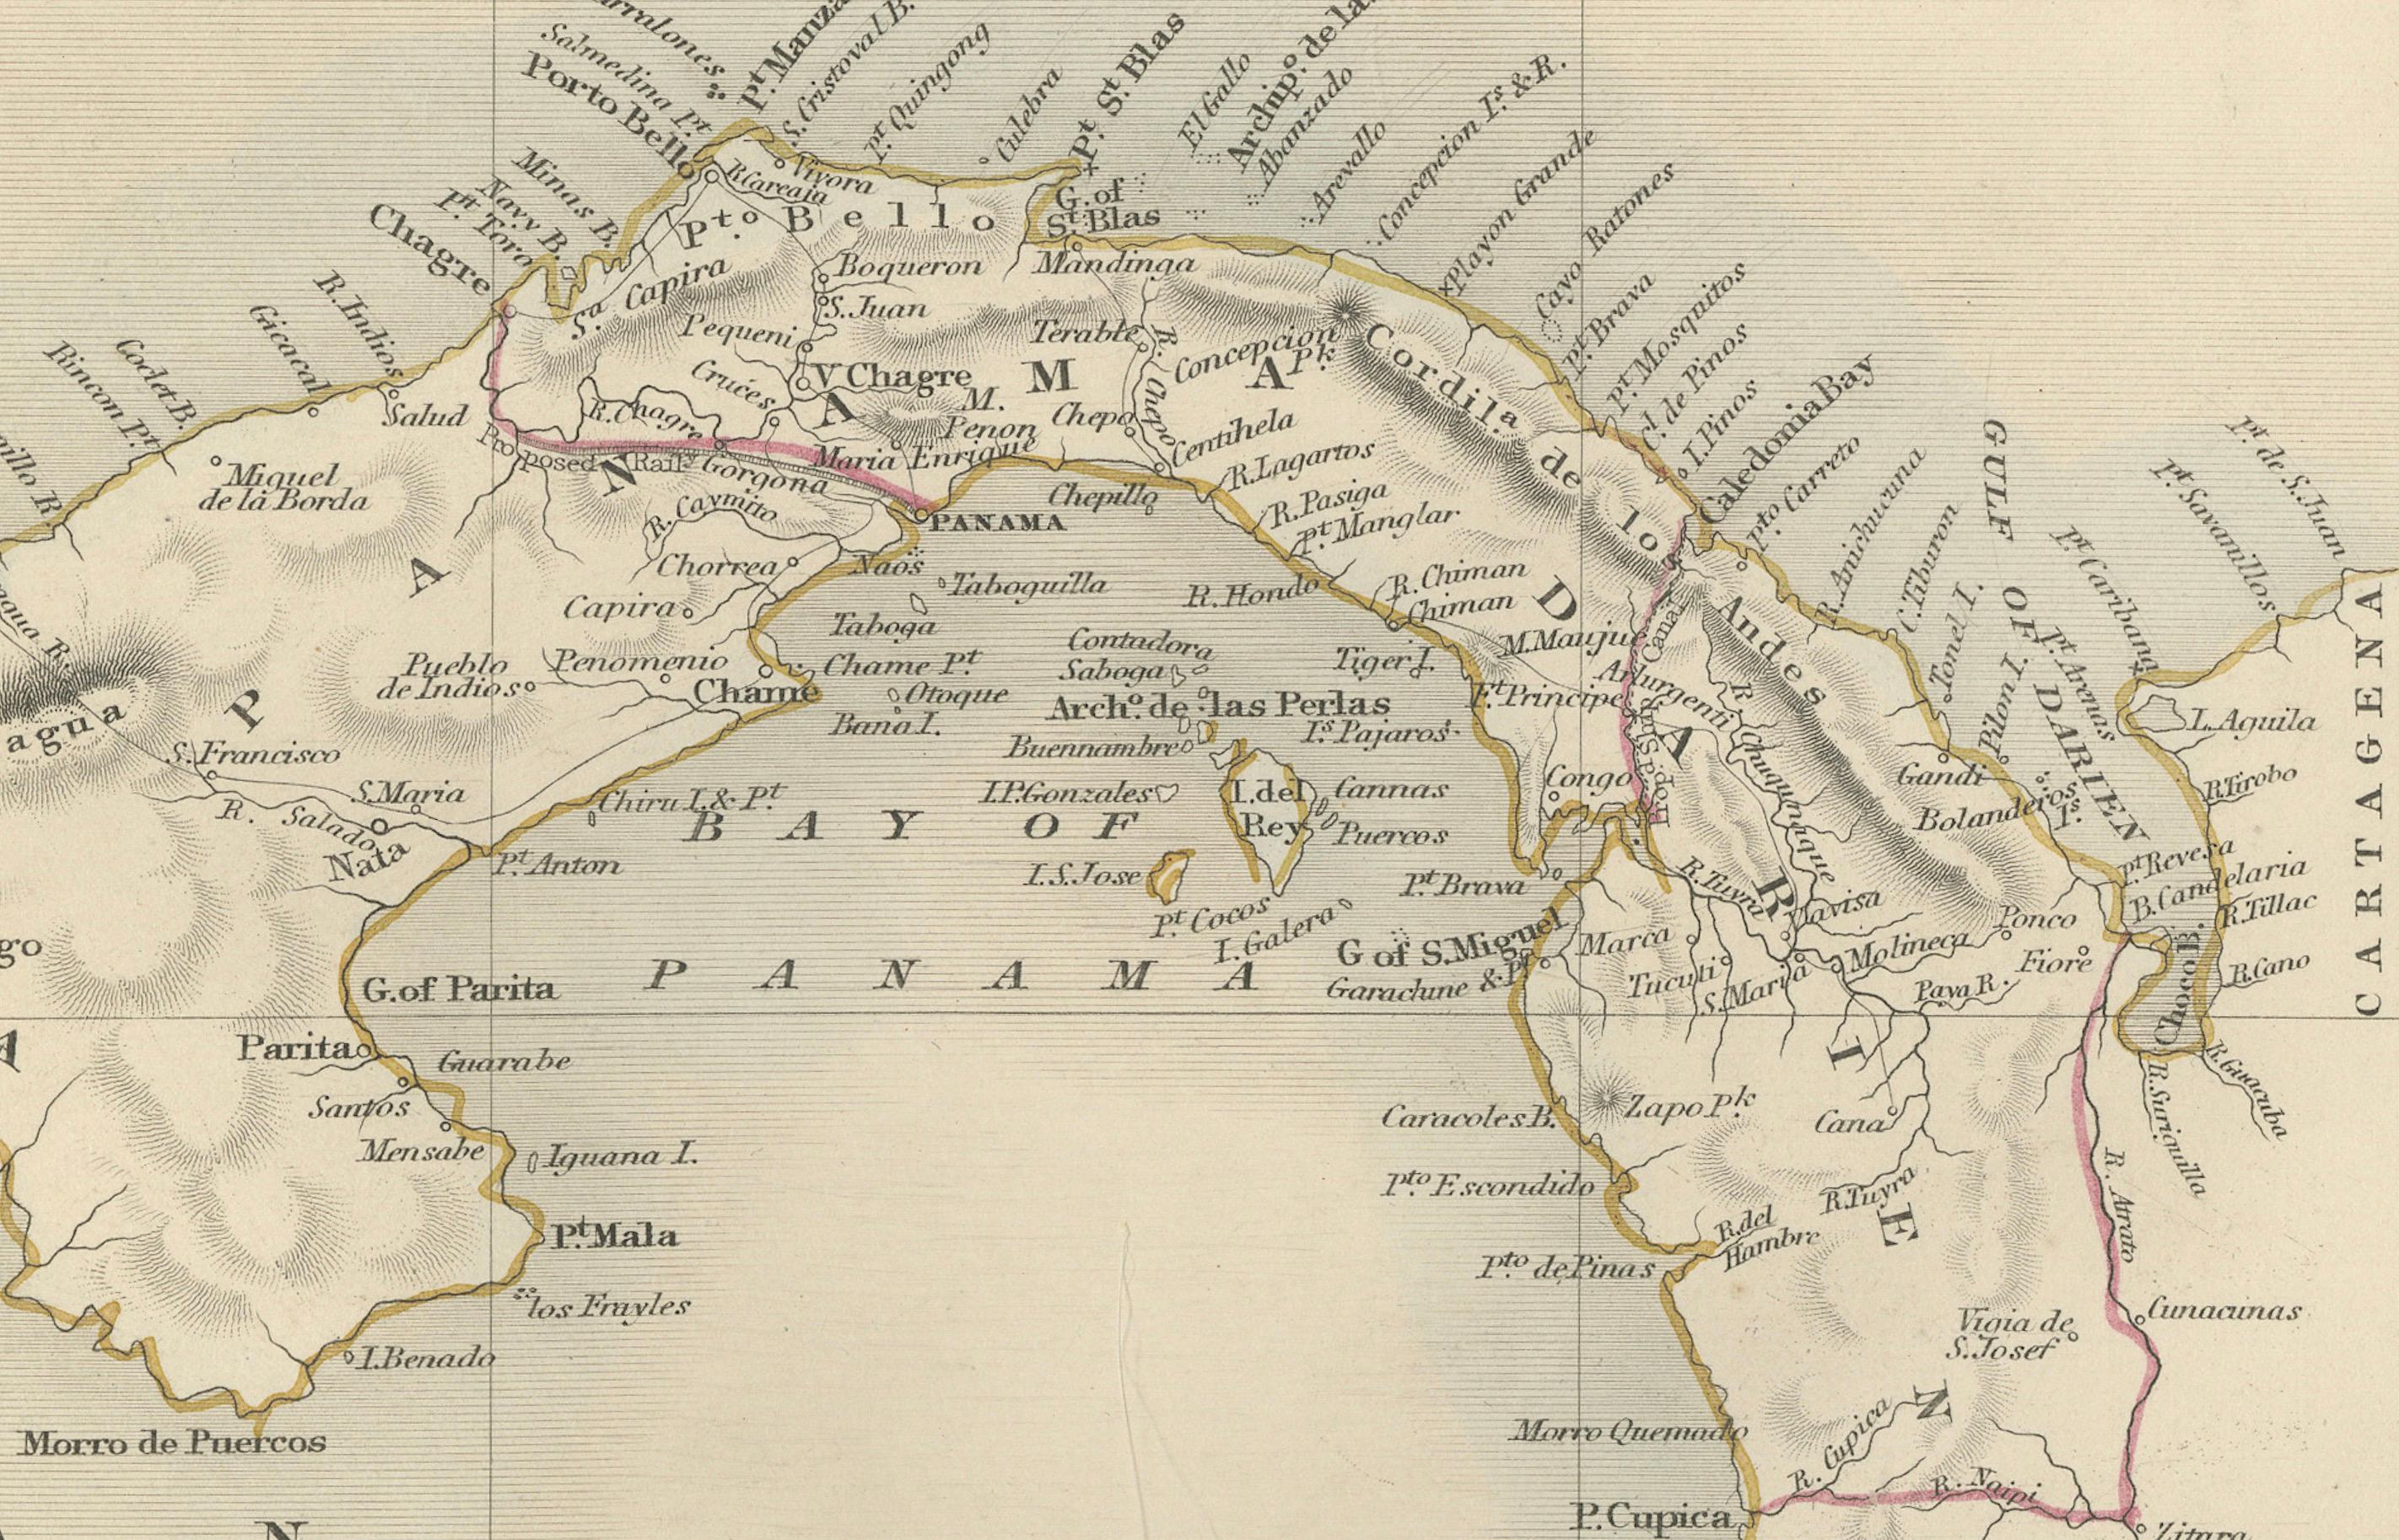 Die Tallis-Karte des Isthmus von Panama ist ein wunderschönes, detailliertes Werk, das charakteristisch für die Karten von John Tallis & Company ist, einem der letzten kartografischen Unternehmen, das seine Karten mit solch aufwändigen